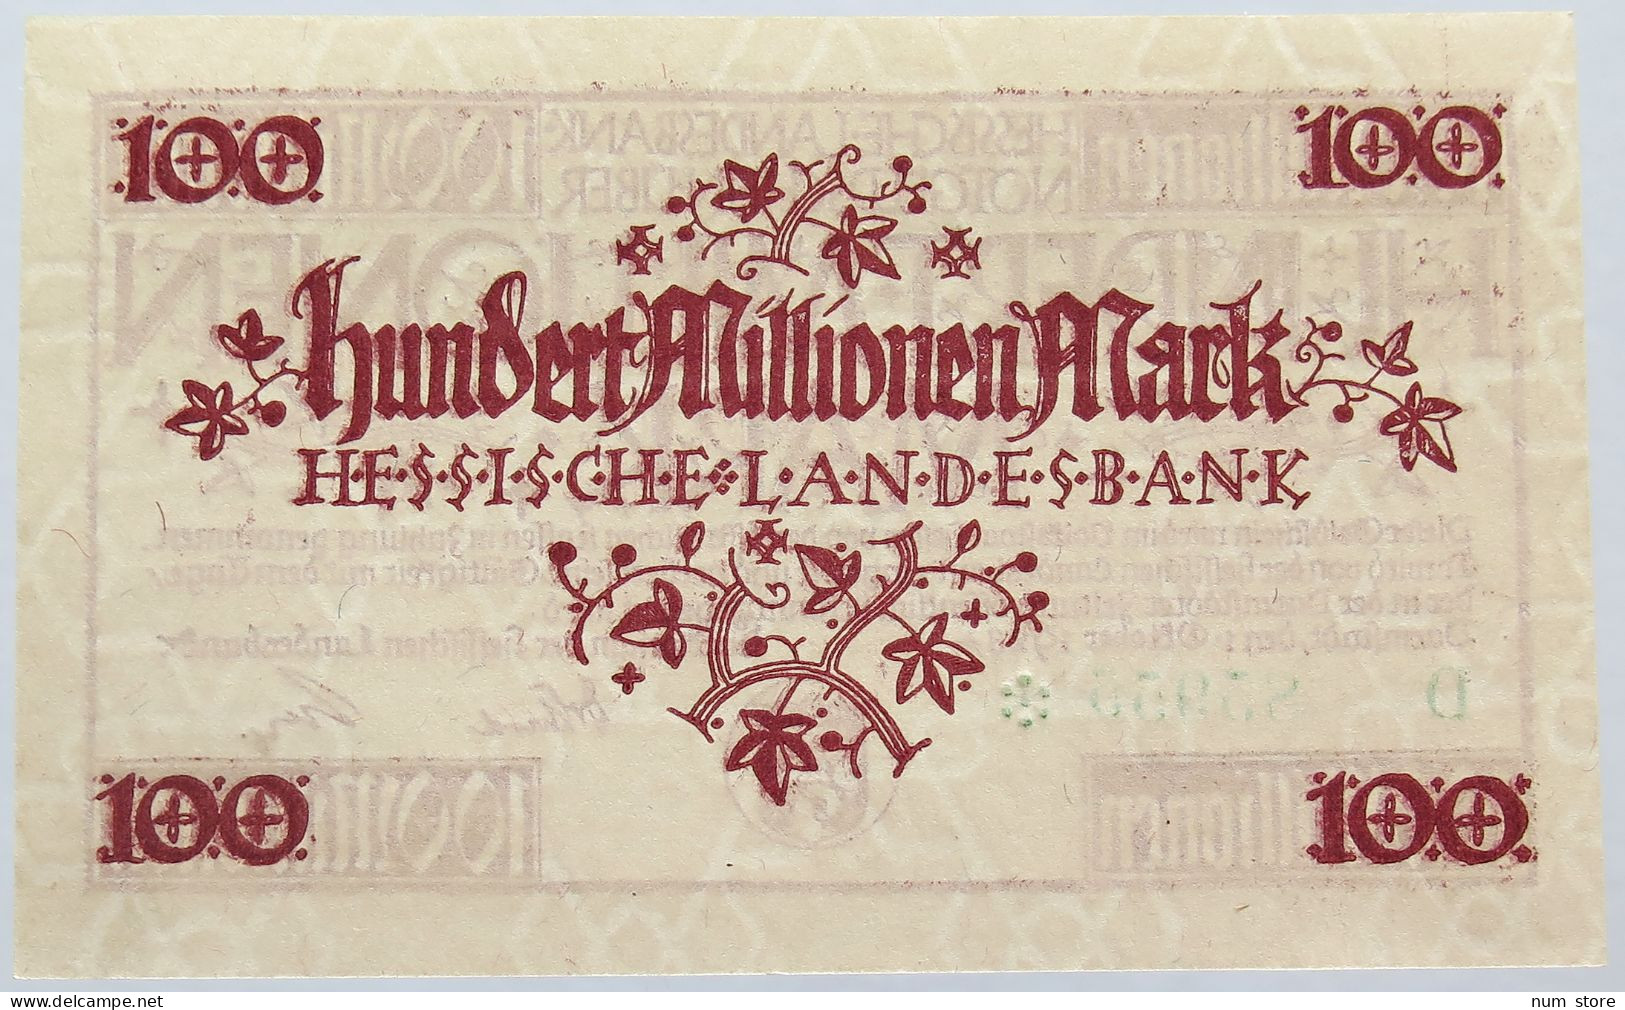 GERMANY 100 MILLIONEN MARK 1923 HESSEN #alb004 0145 - 100 Mio. Mark